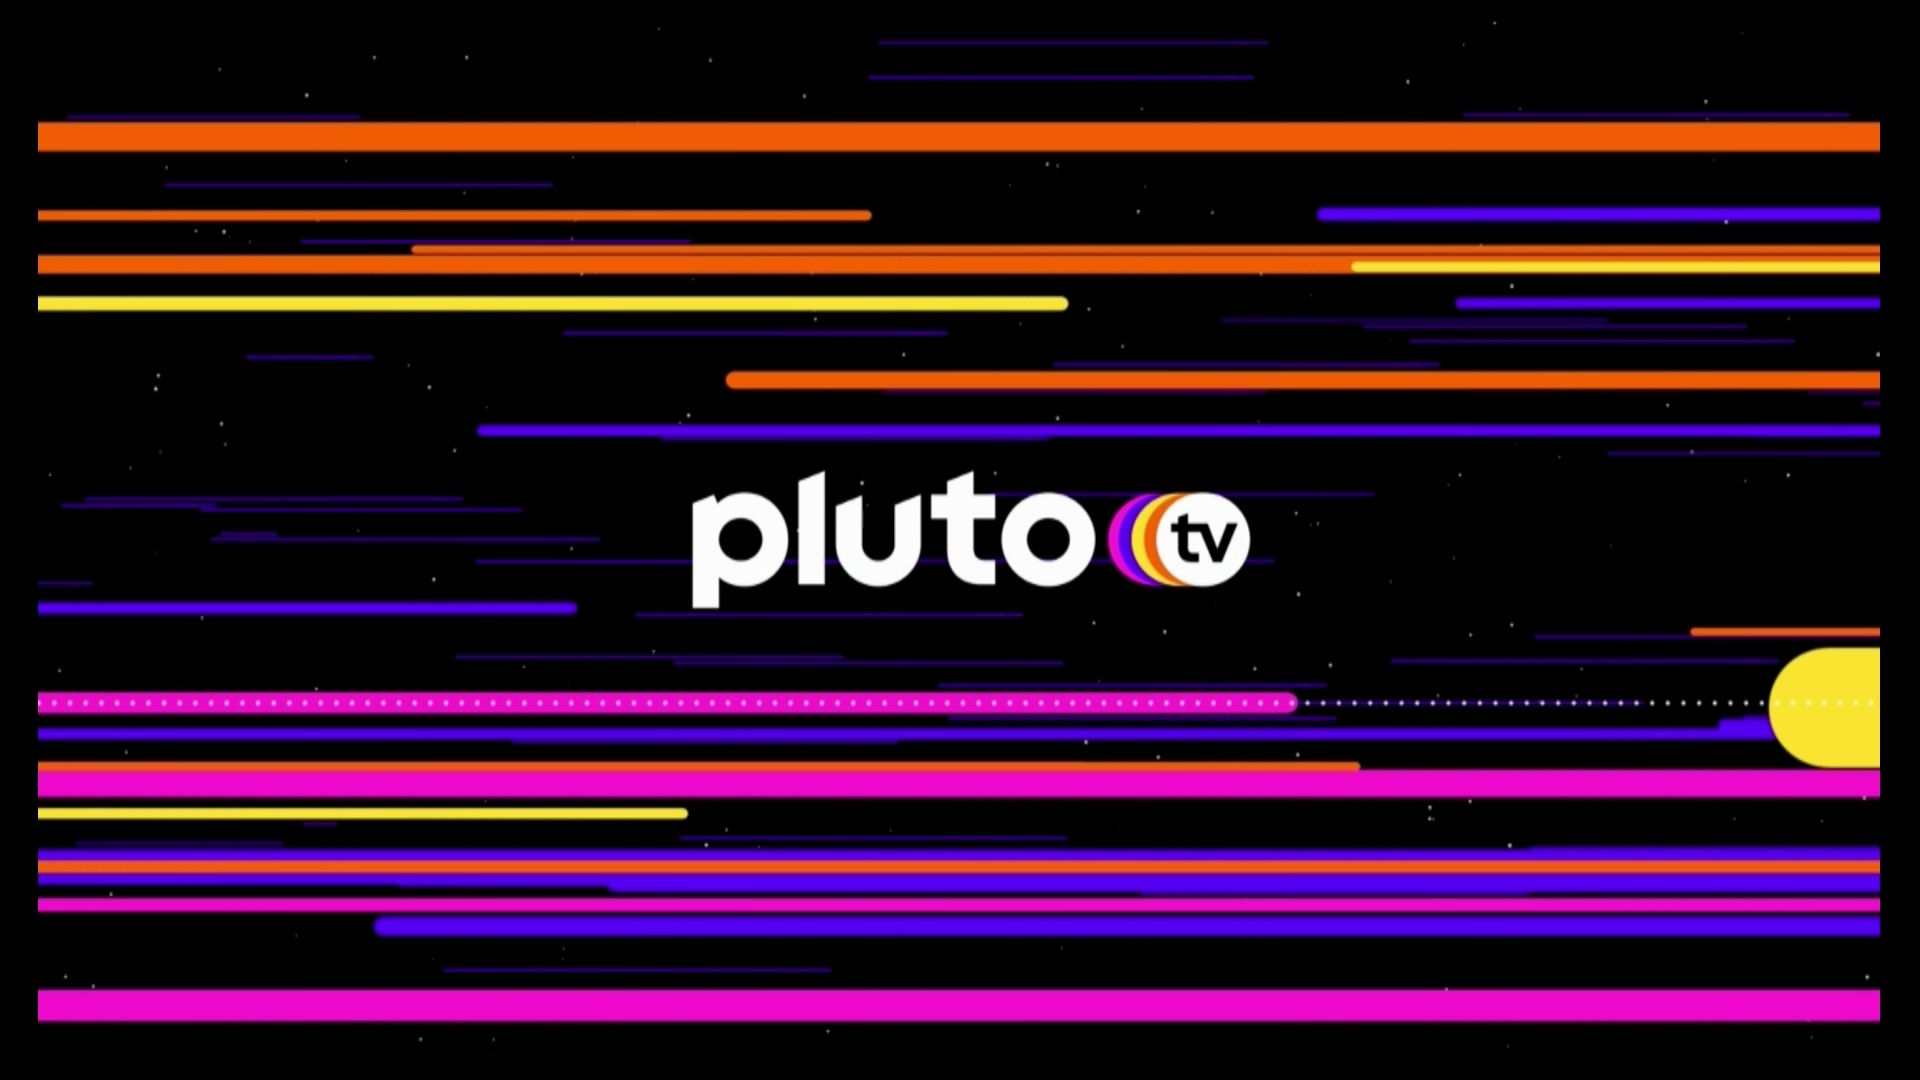 #Pluto TV: Das sind die Highlights im April